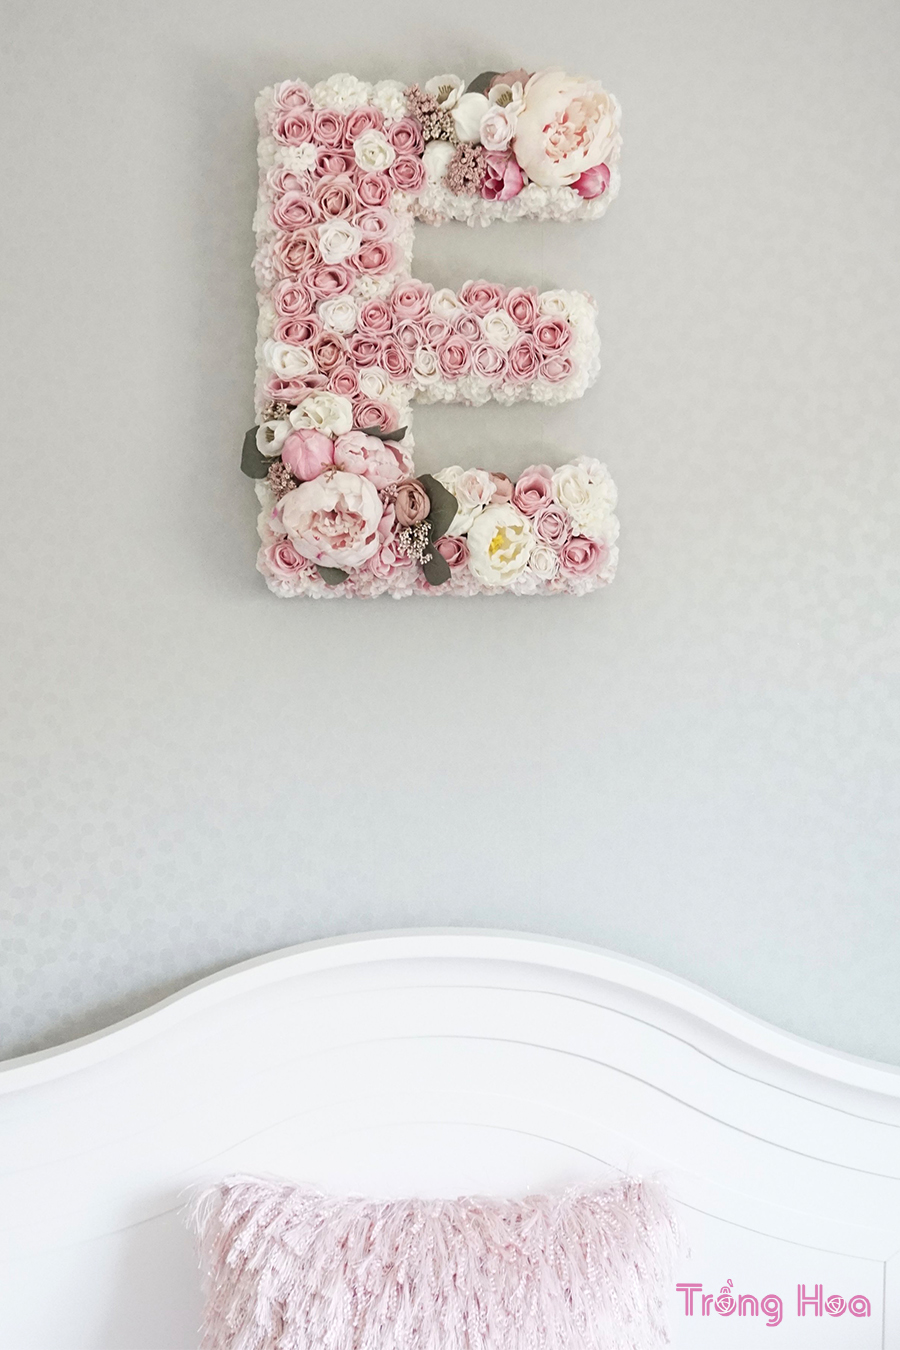 Cách tự làm chữ E bằng hoa trang trí tường tuyệt đẹp